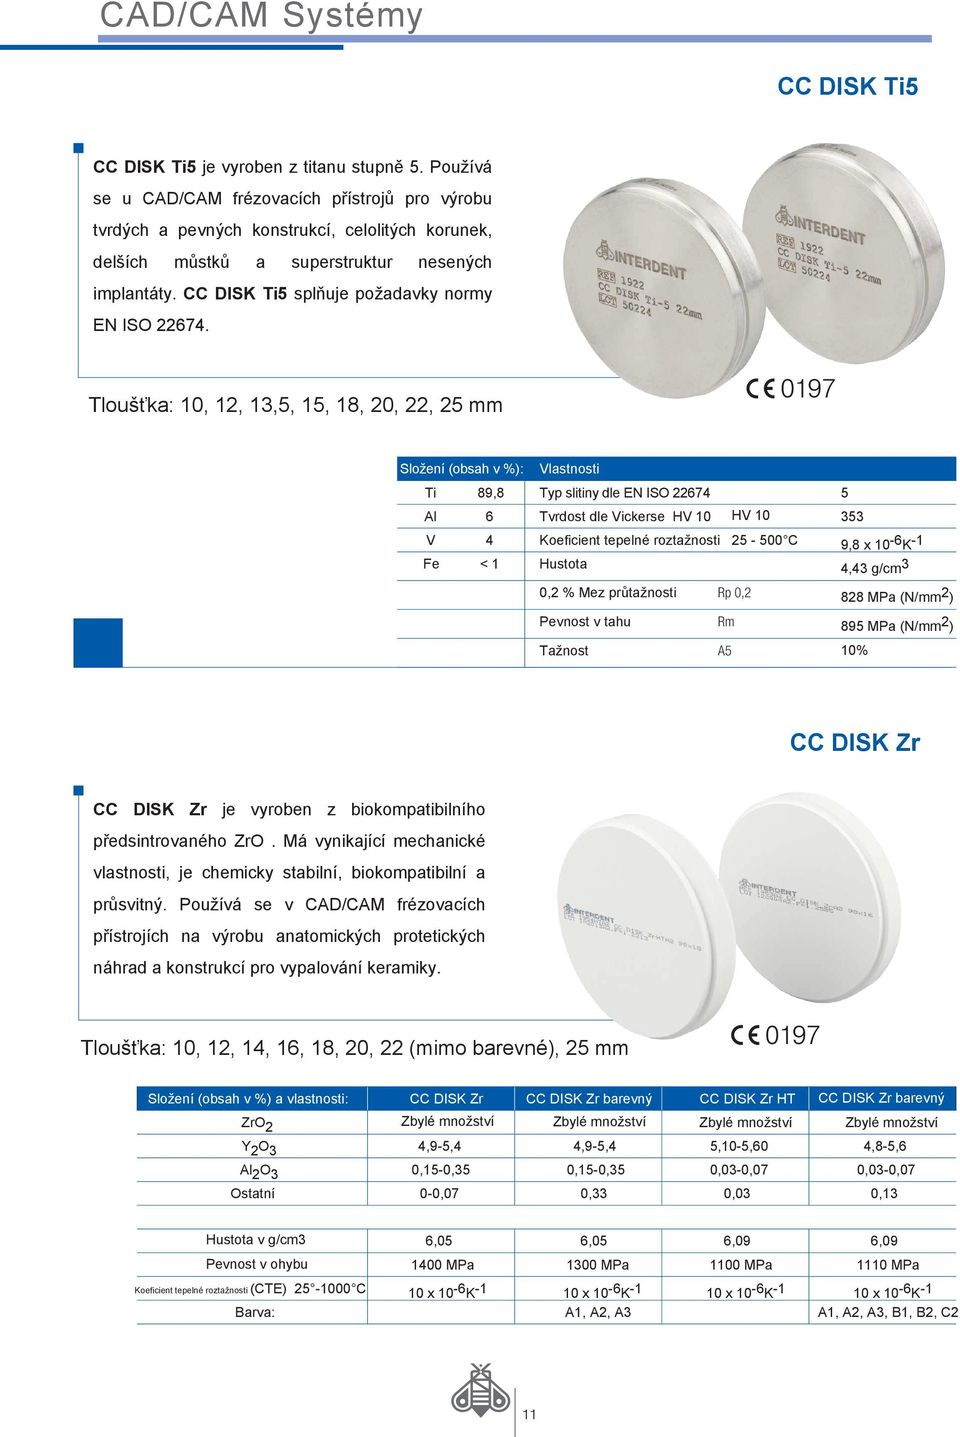 CC DISK Ti5 splňuje požadavky normy EN ISO 22674.